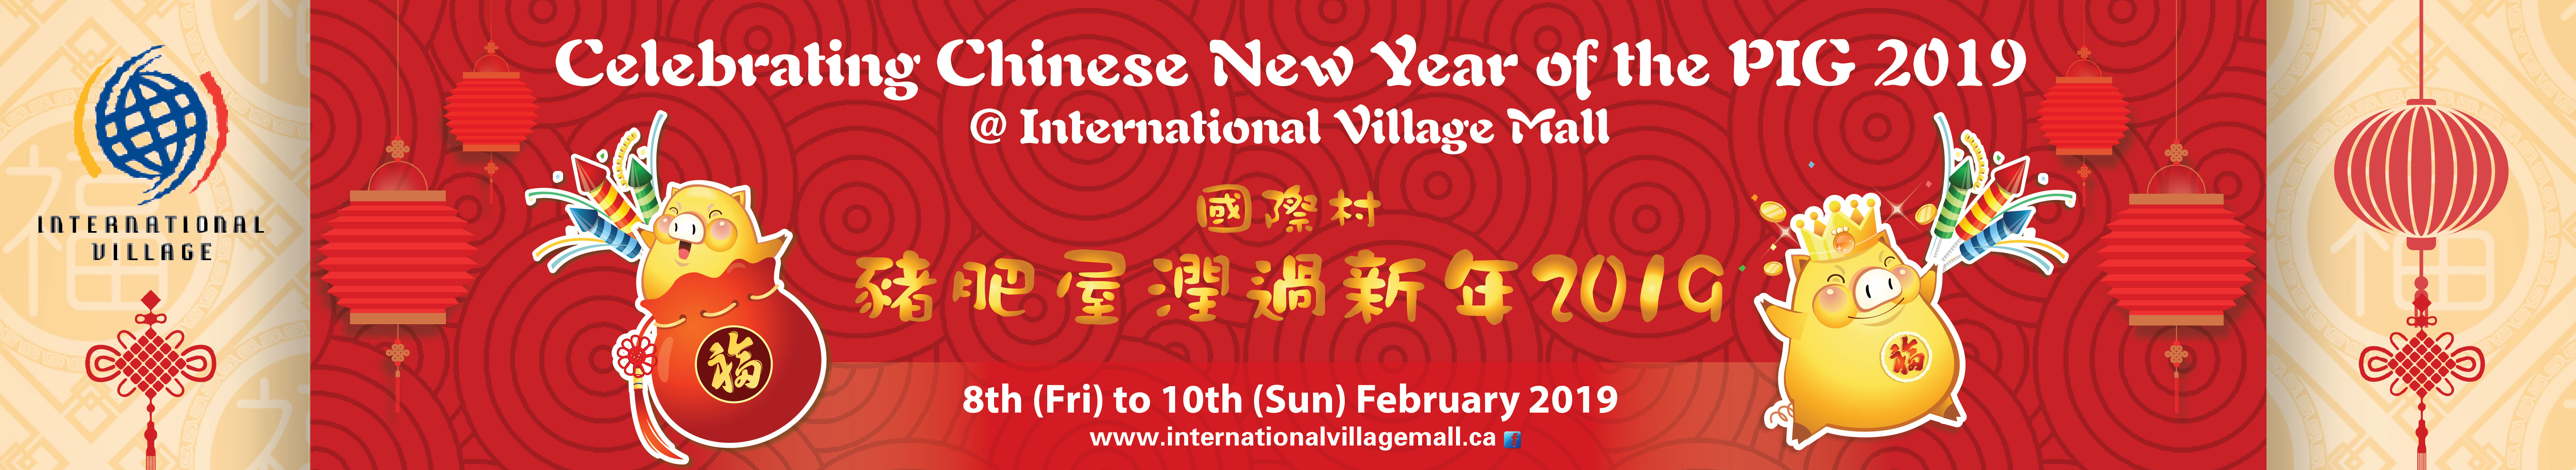 2019 International Village Mall Chinese New Year